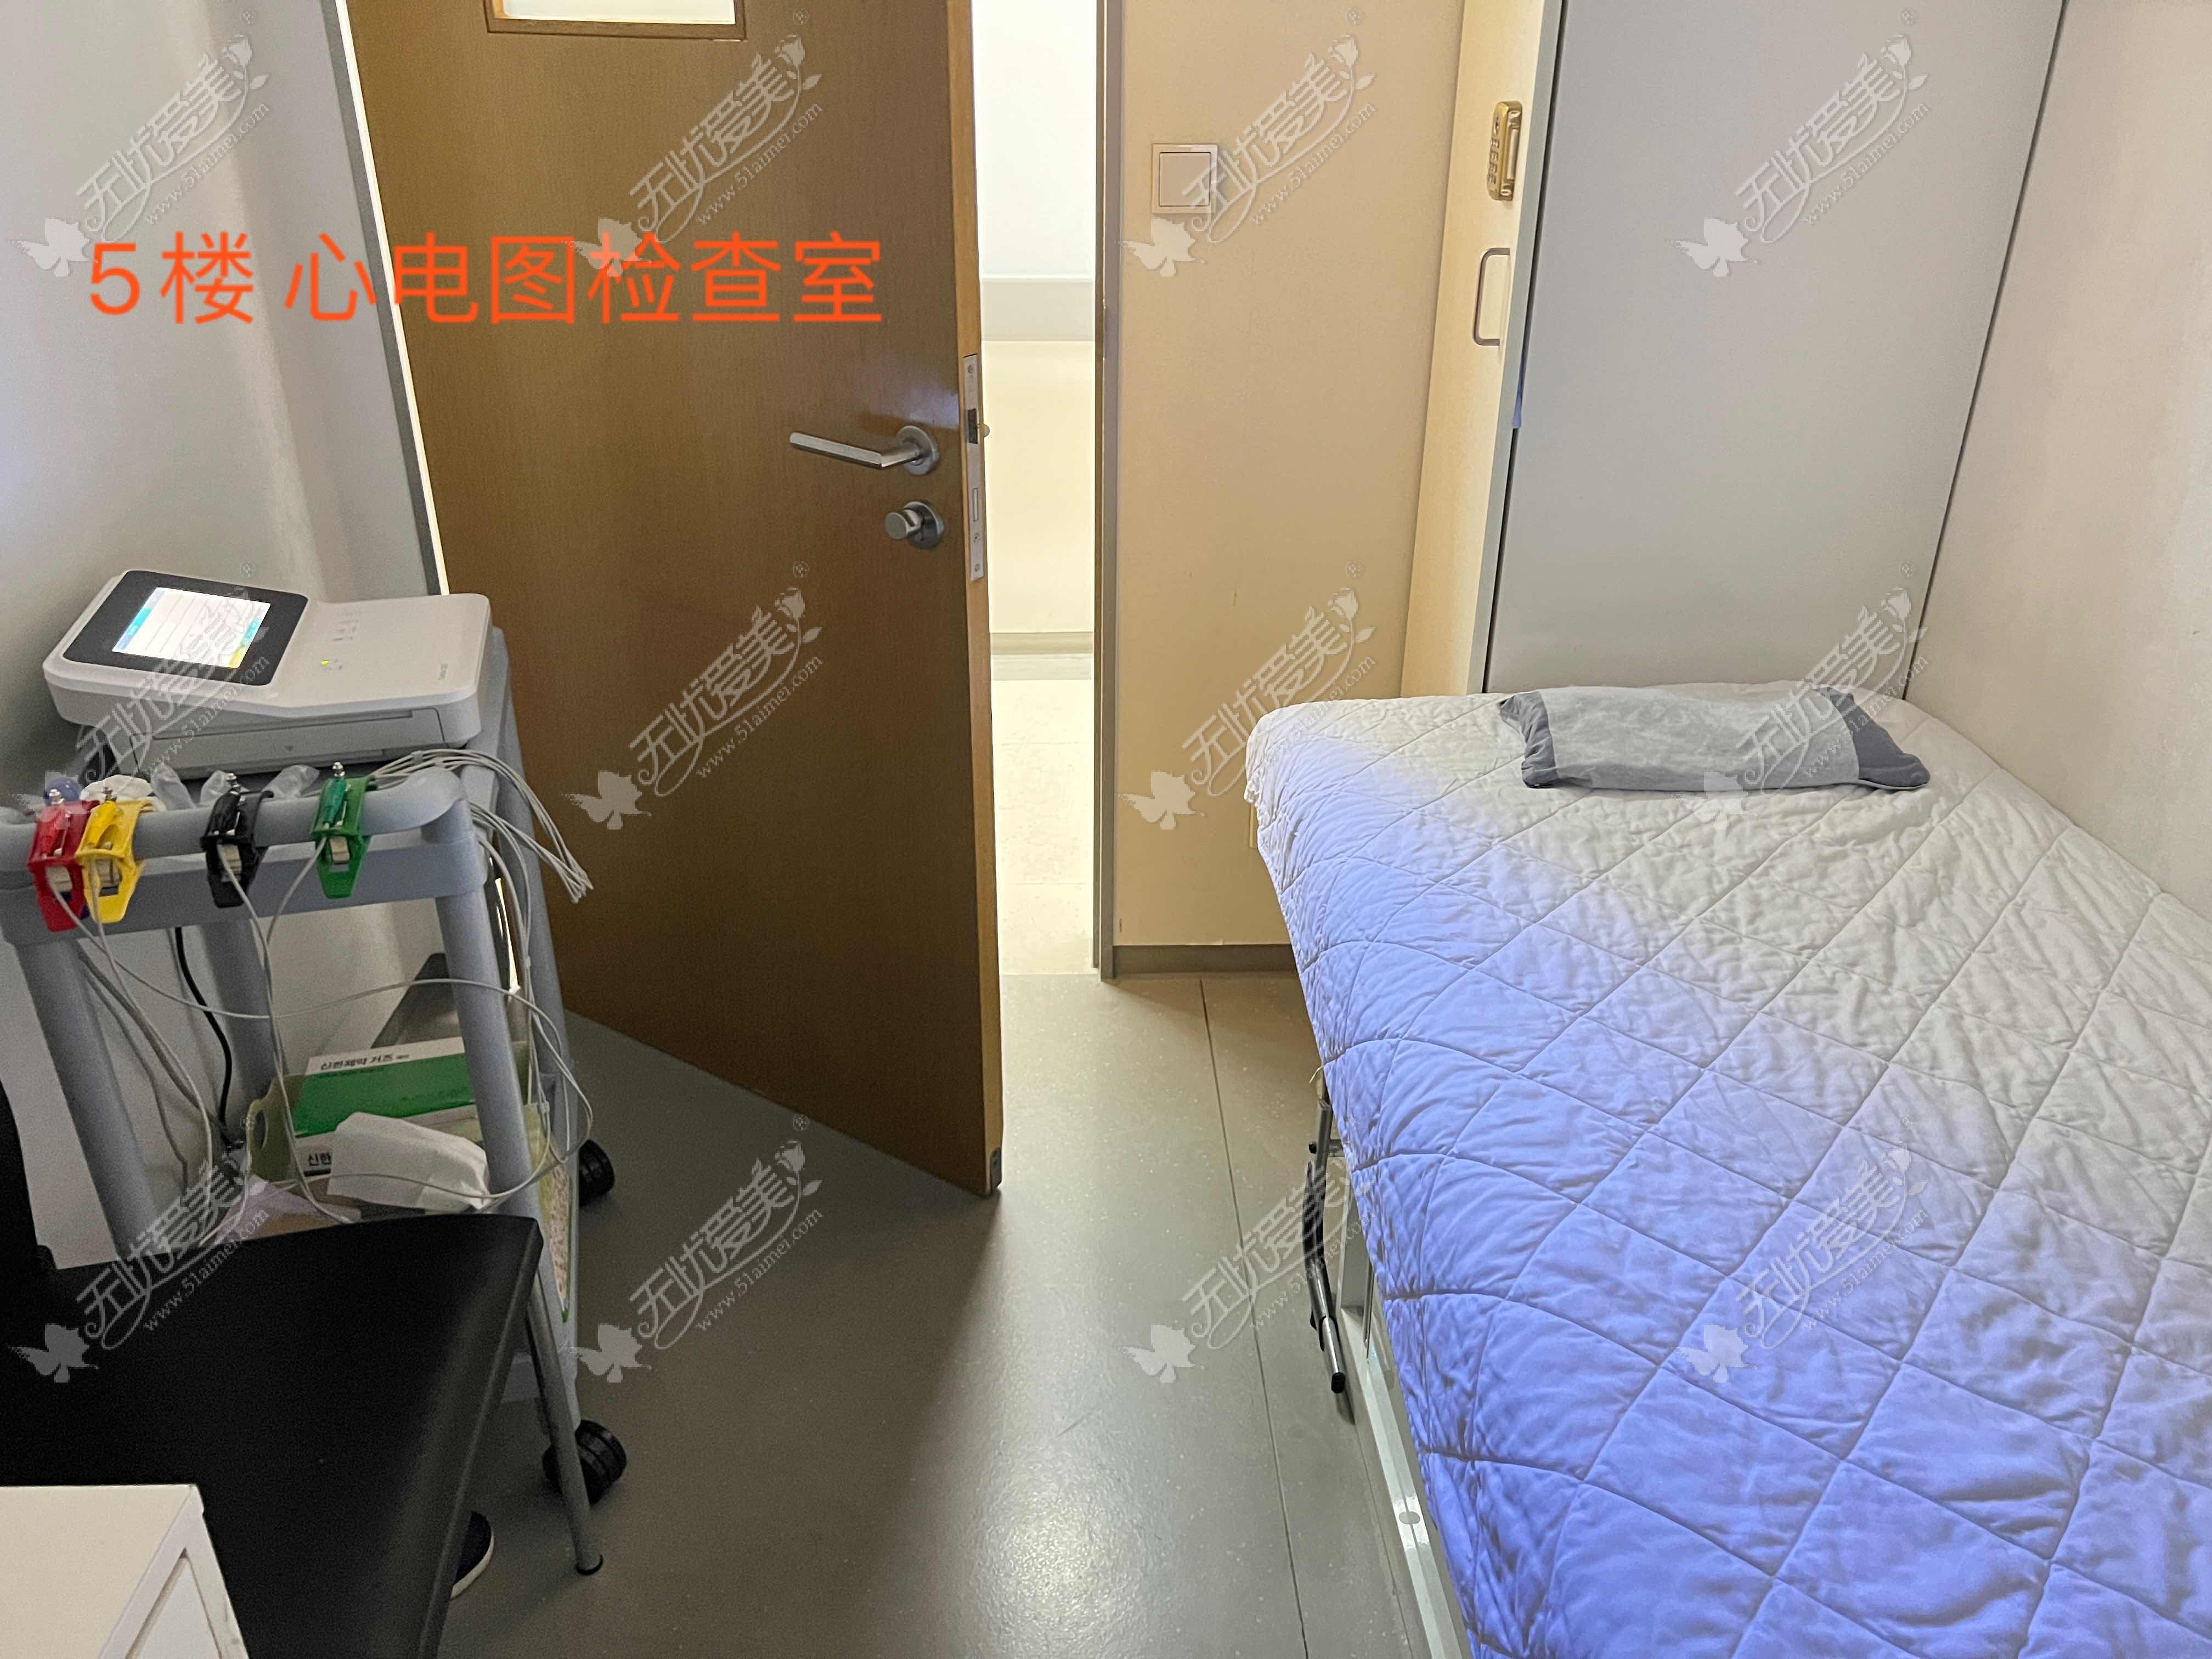 韩国DREAM梦想整形外科医院5楼心电图检查室